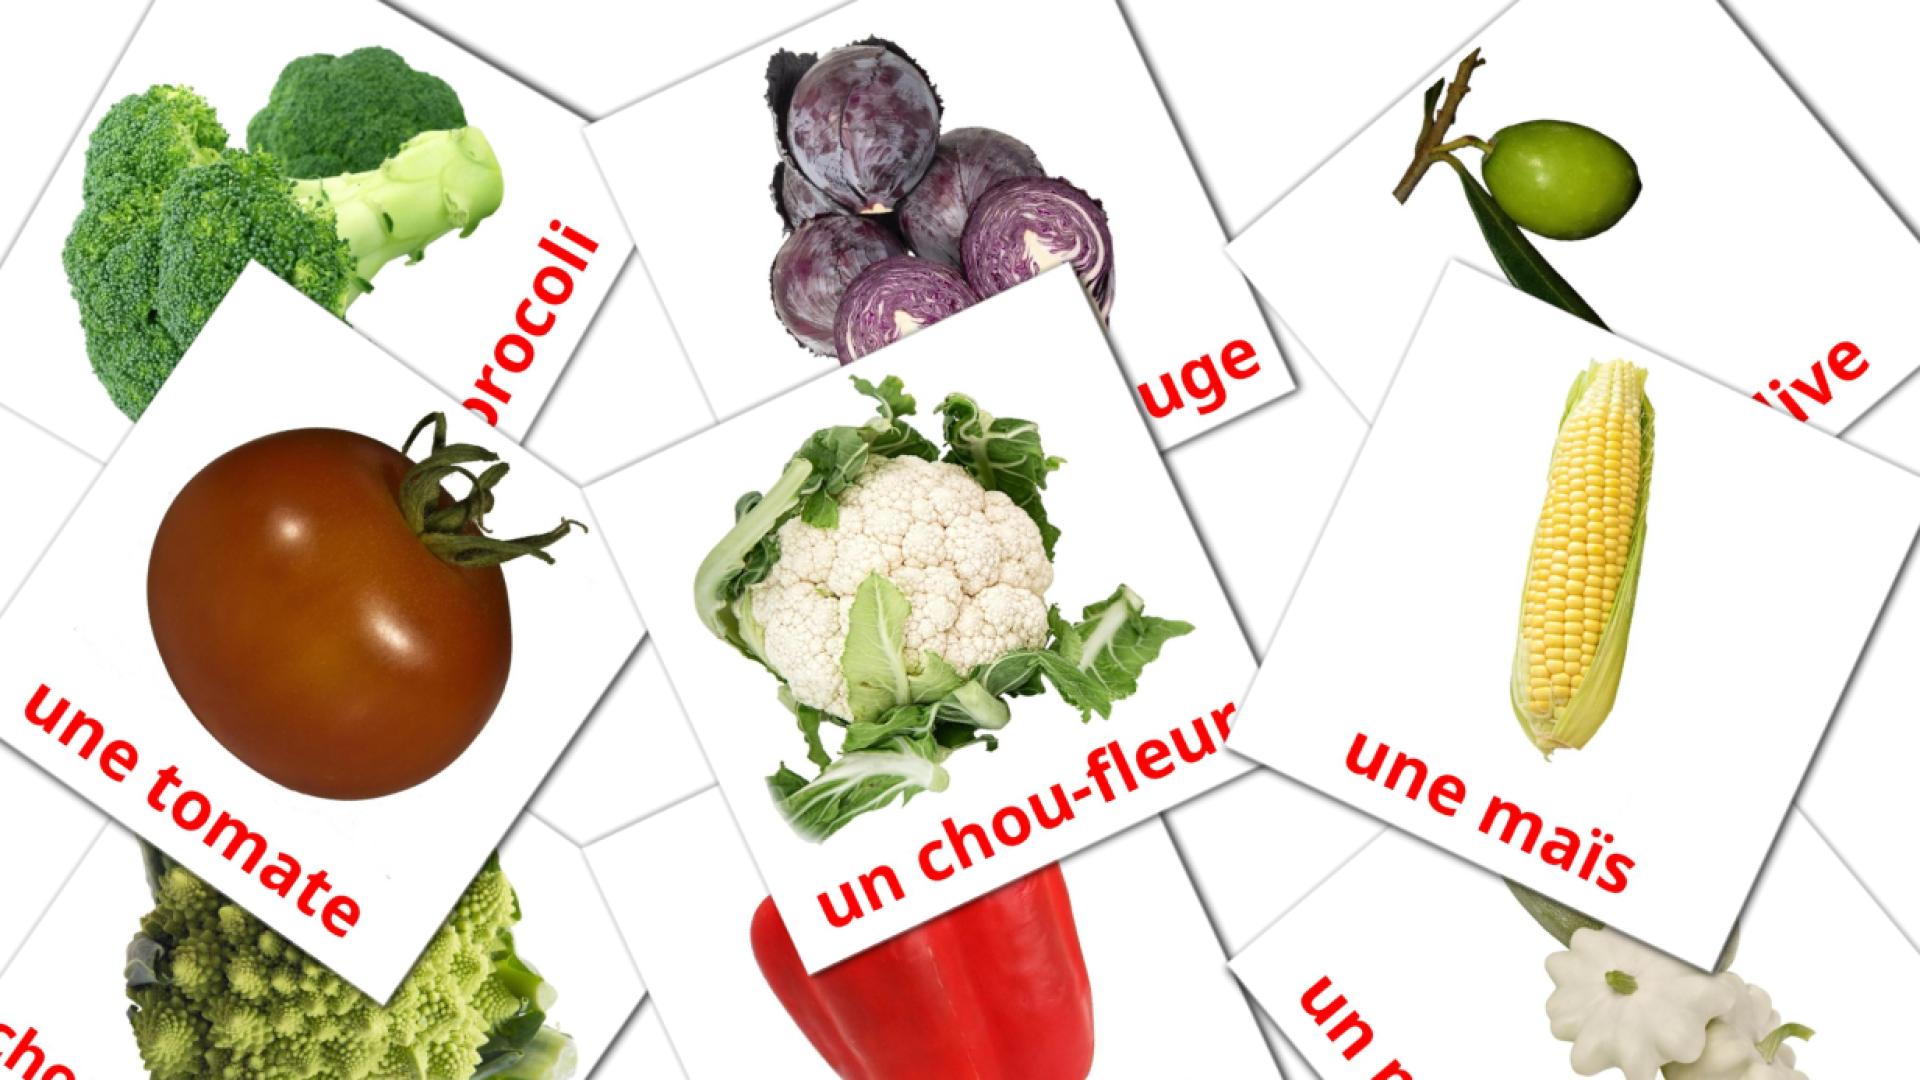 29 Les Légumes flashcards